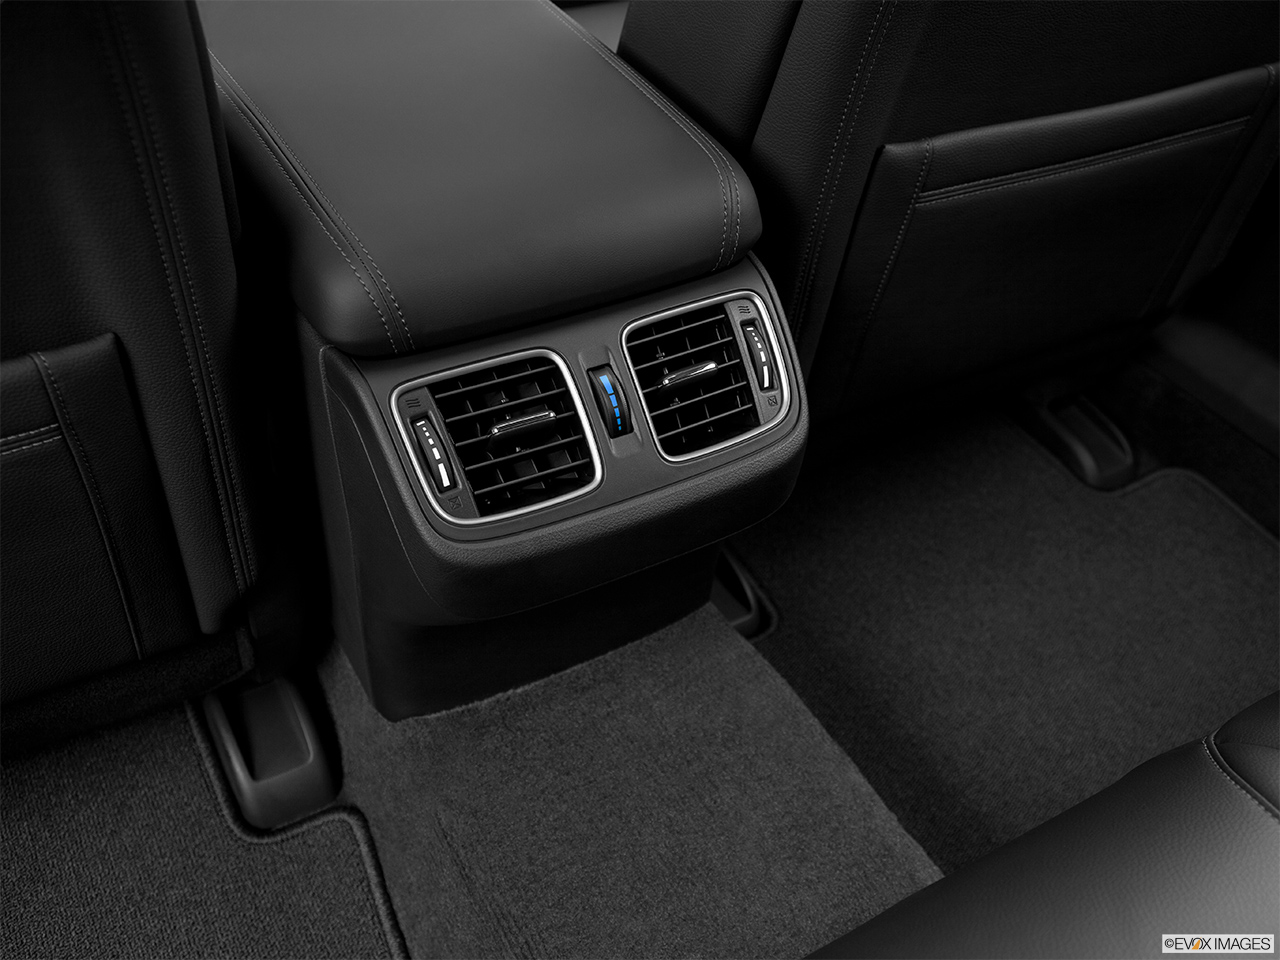 2014 Acura RLX Base Rear A/C controls. 